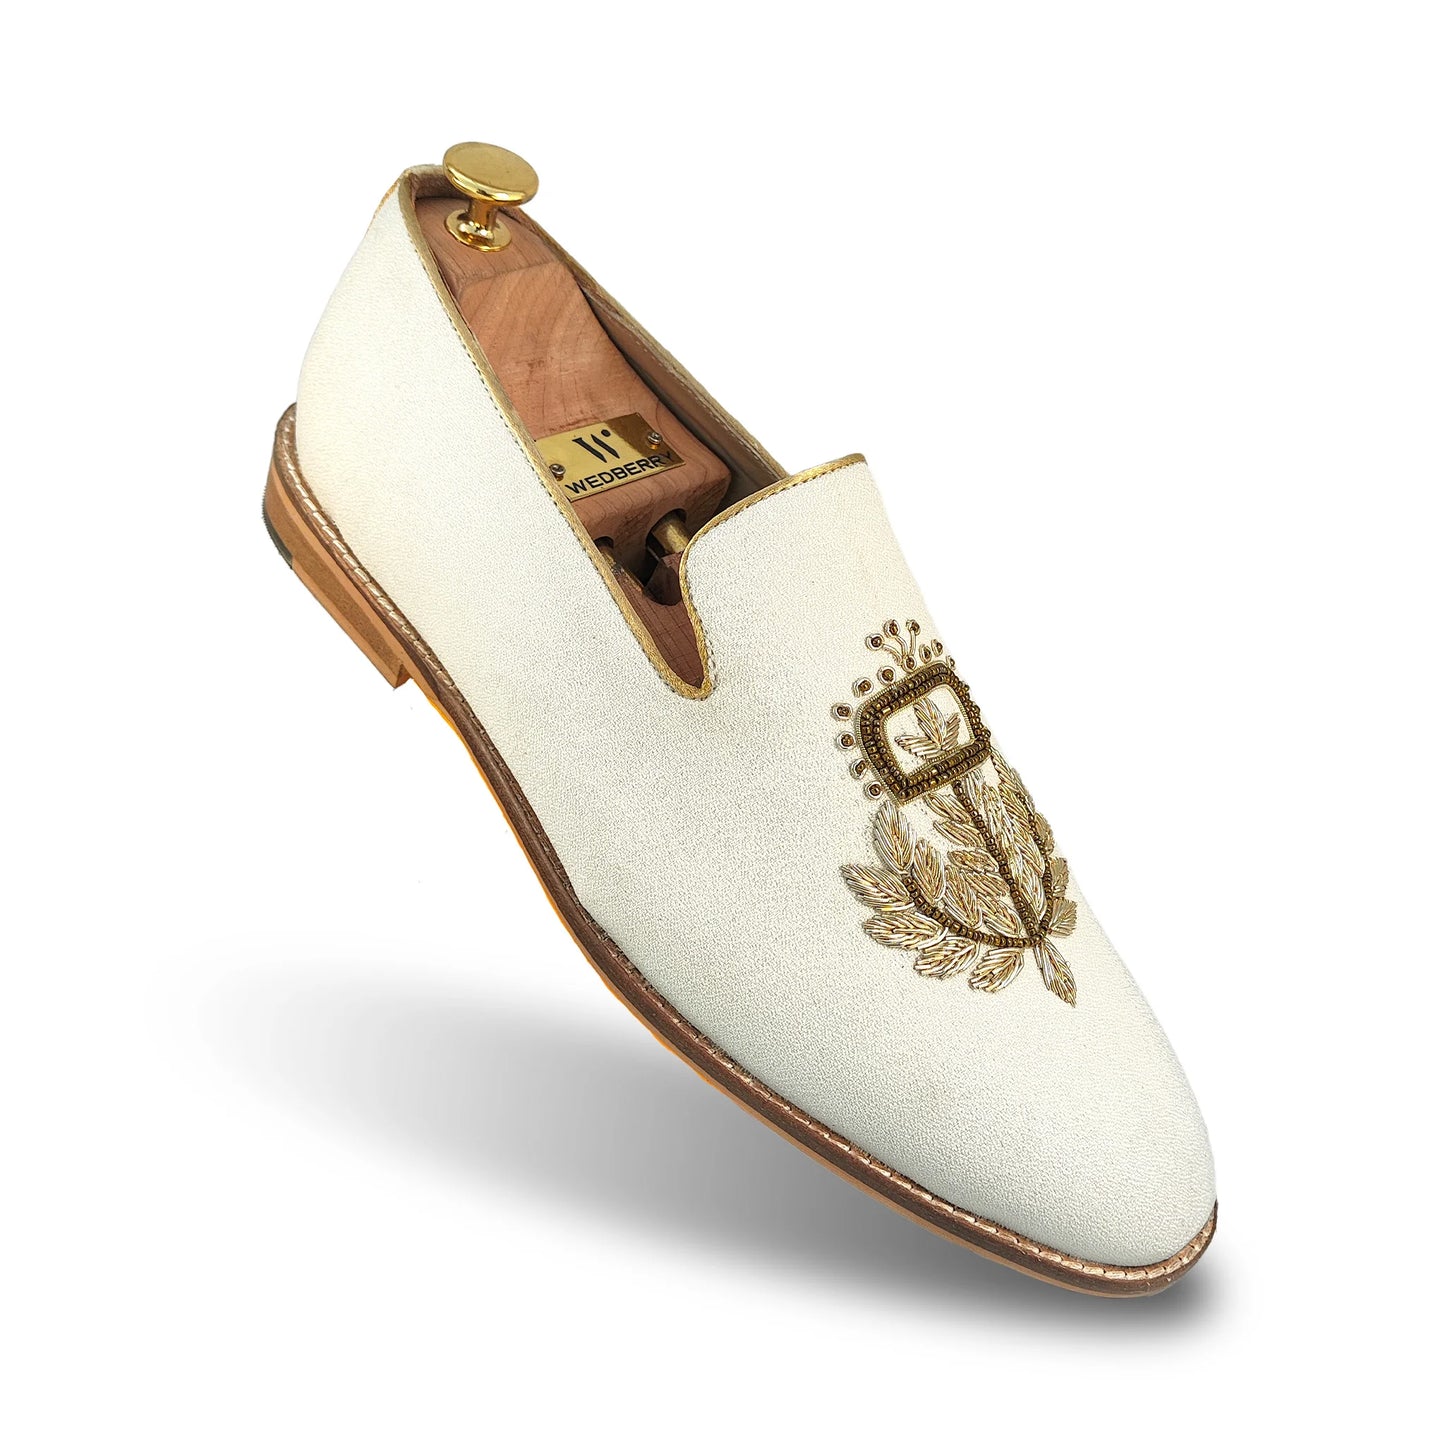 Off White Light Gold Zardozi Handwork Wedding Shoes Ethnic Loafers for Men